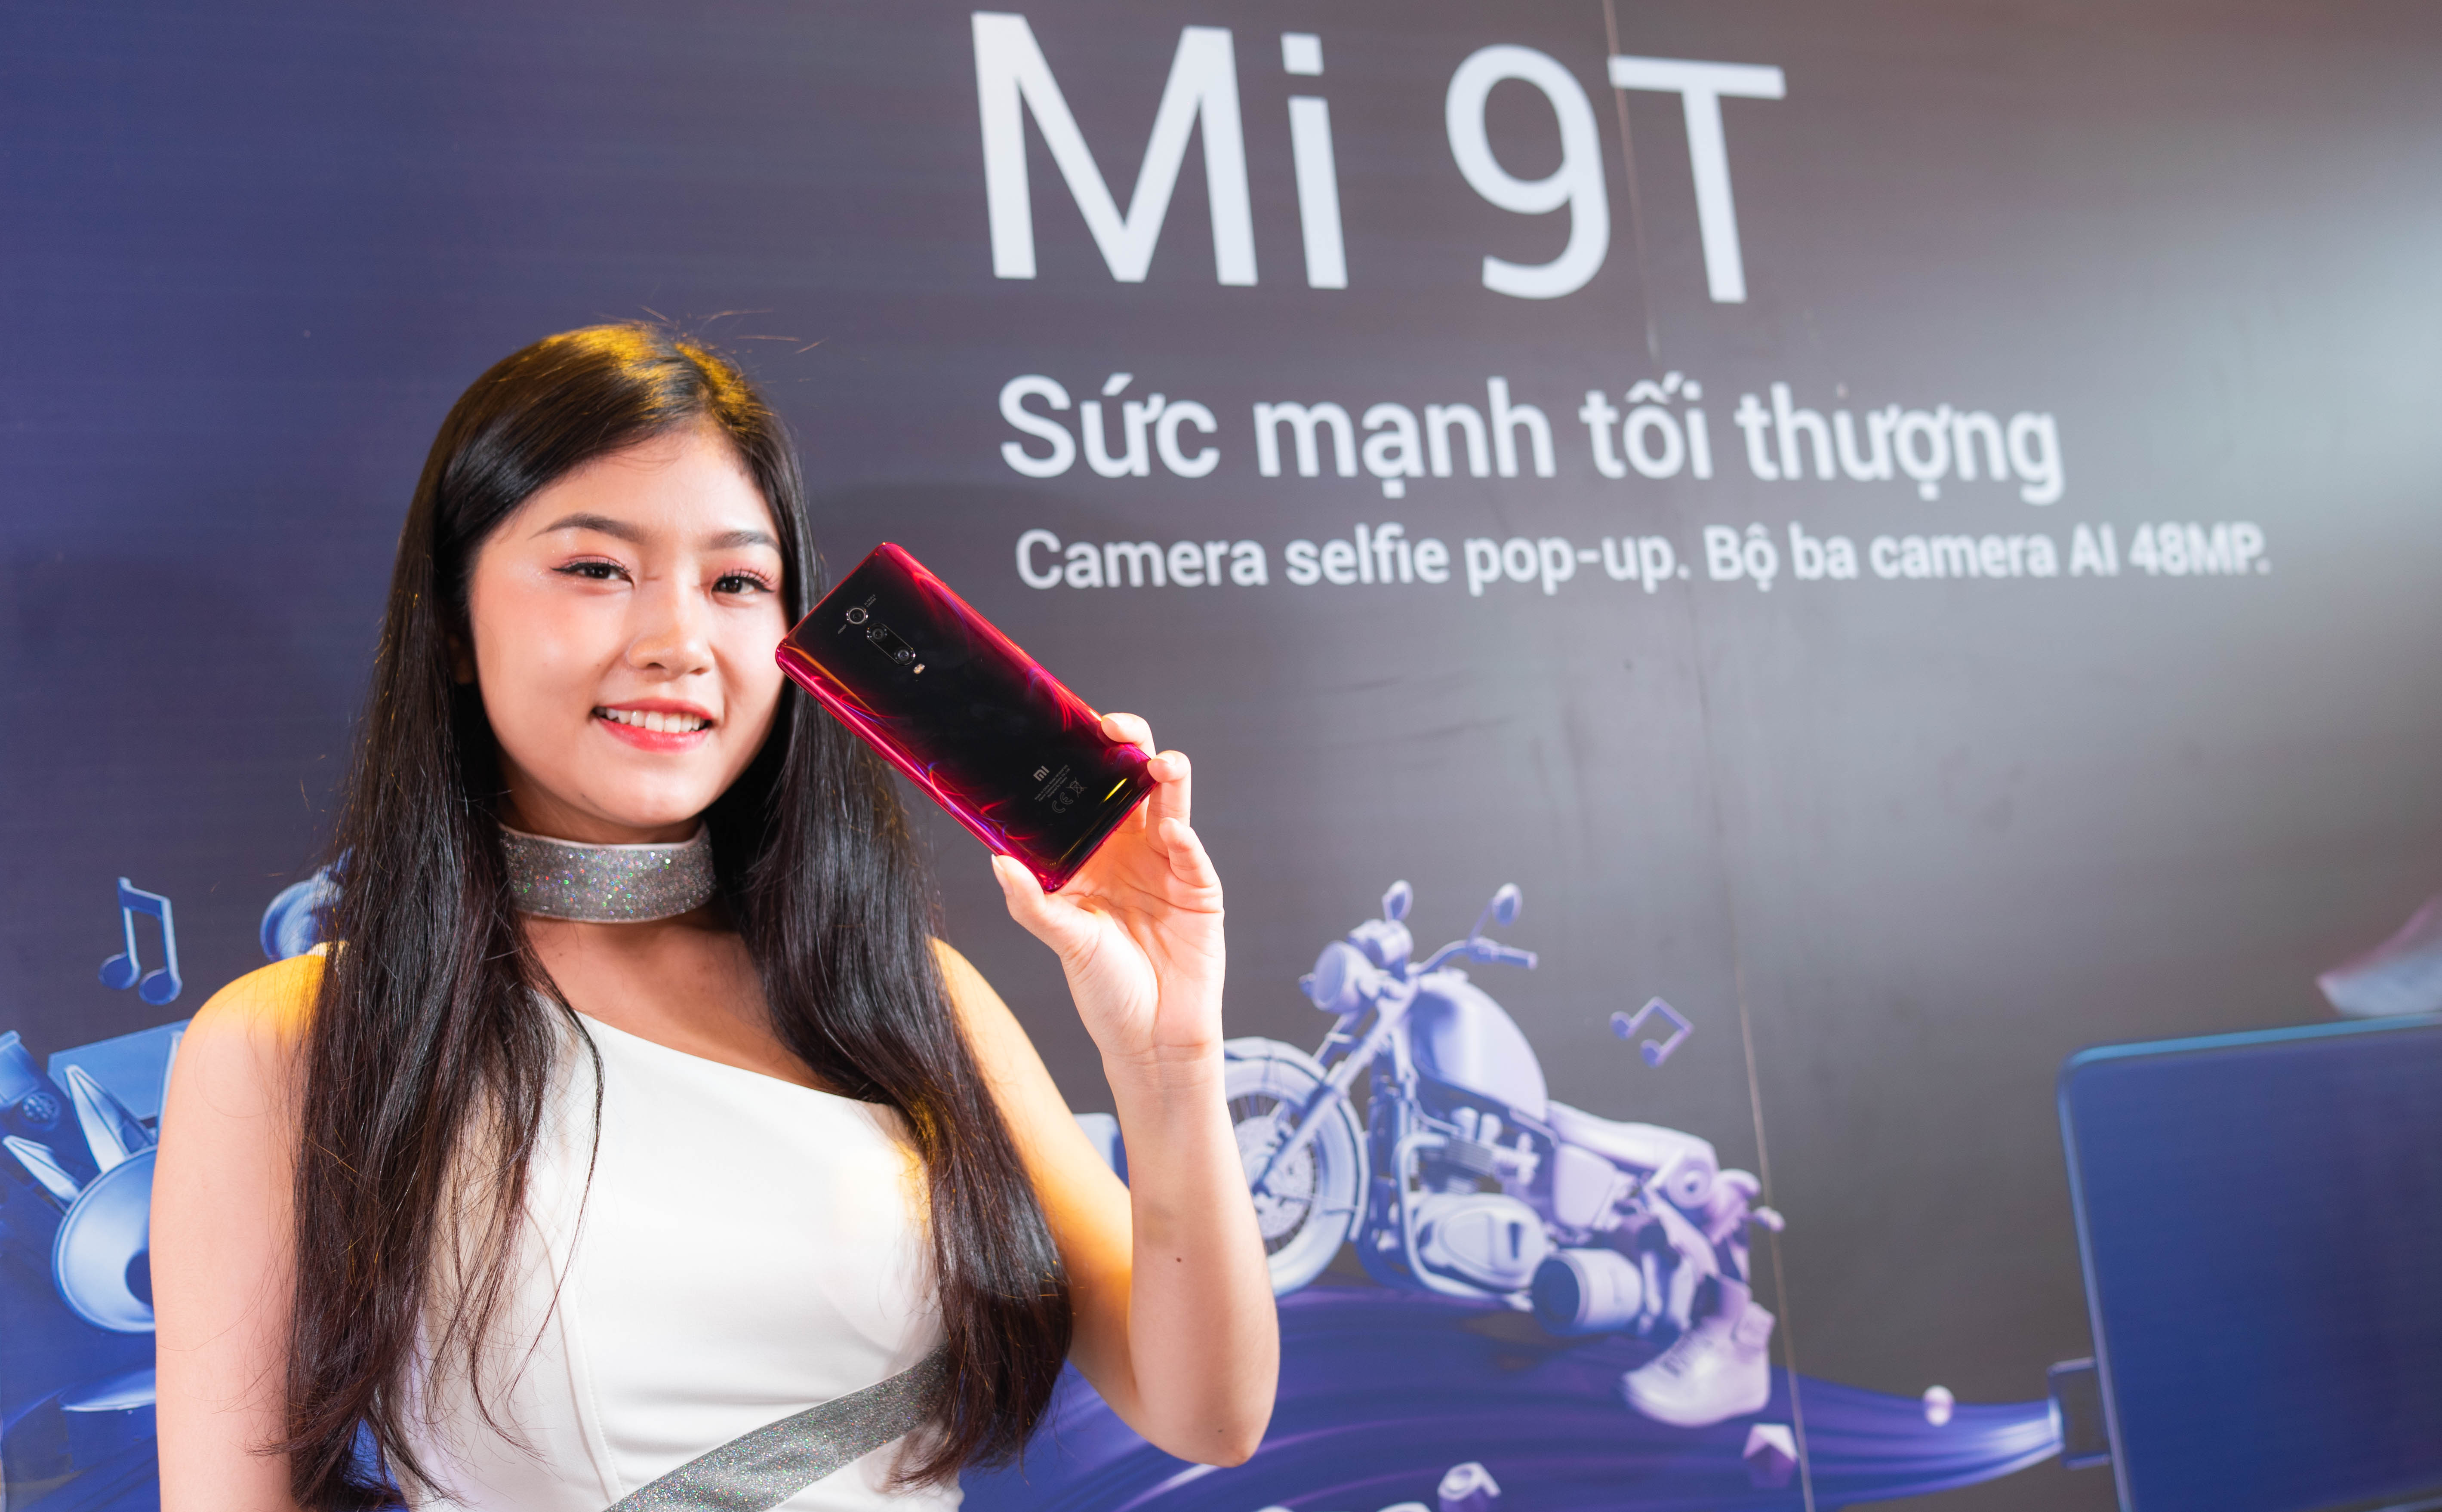 Xiaomi ra mắt 3 smartphone đón mùa tựu trường giá từ 2,49 triệu: Mi 9T, Mi A3 và Redmi 7A